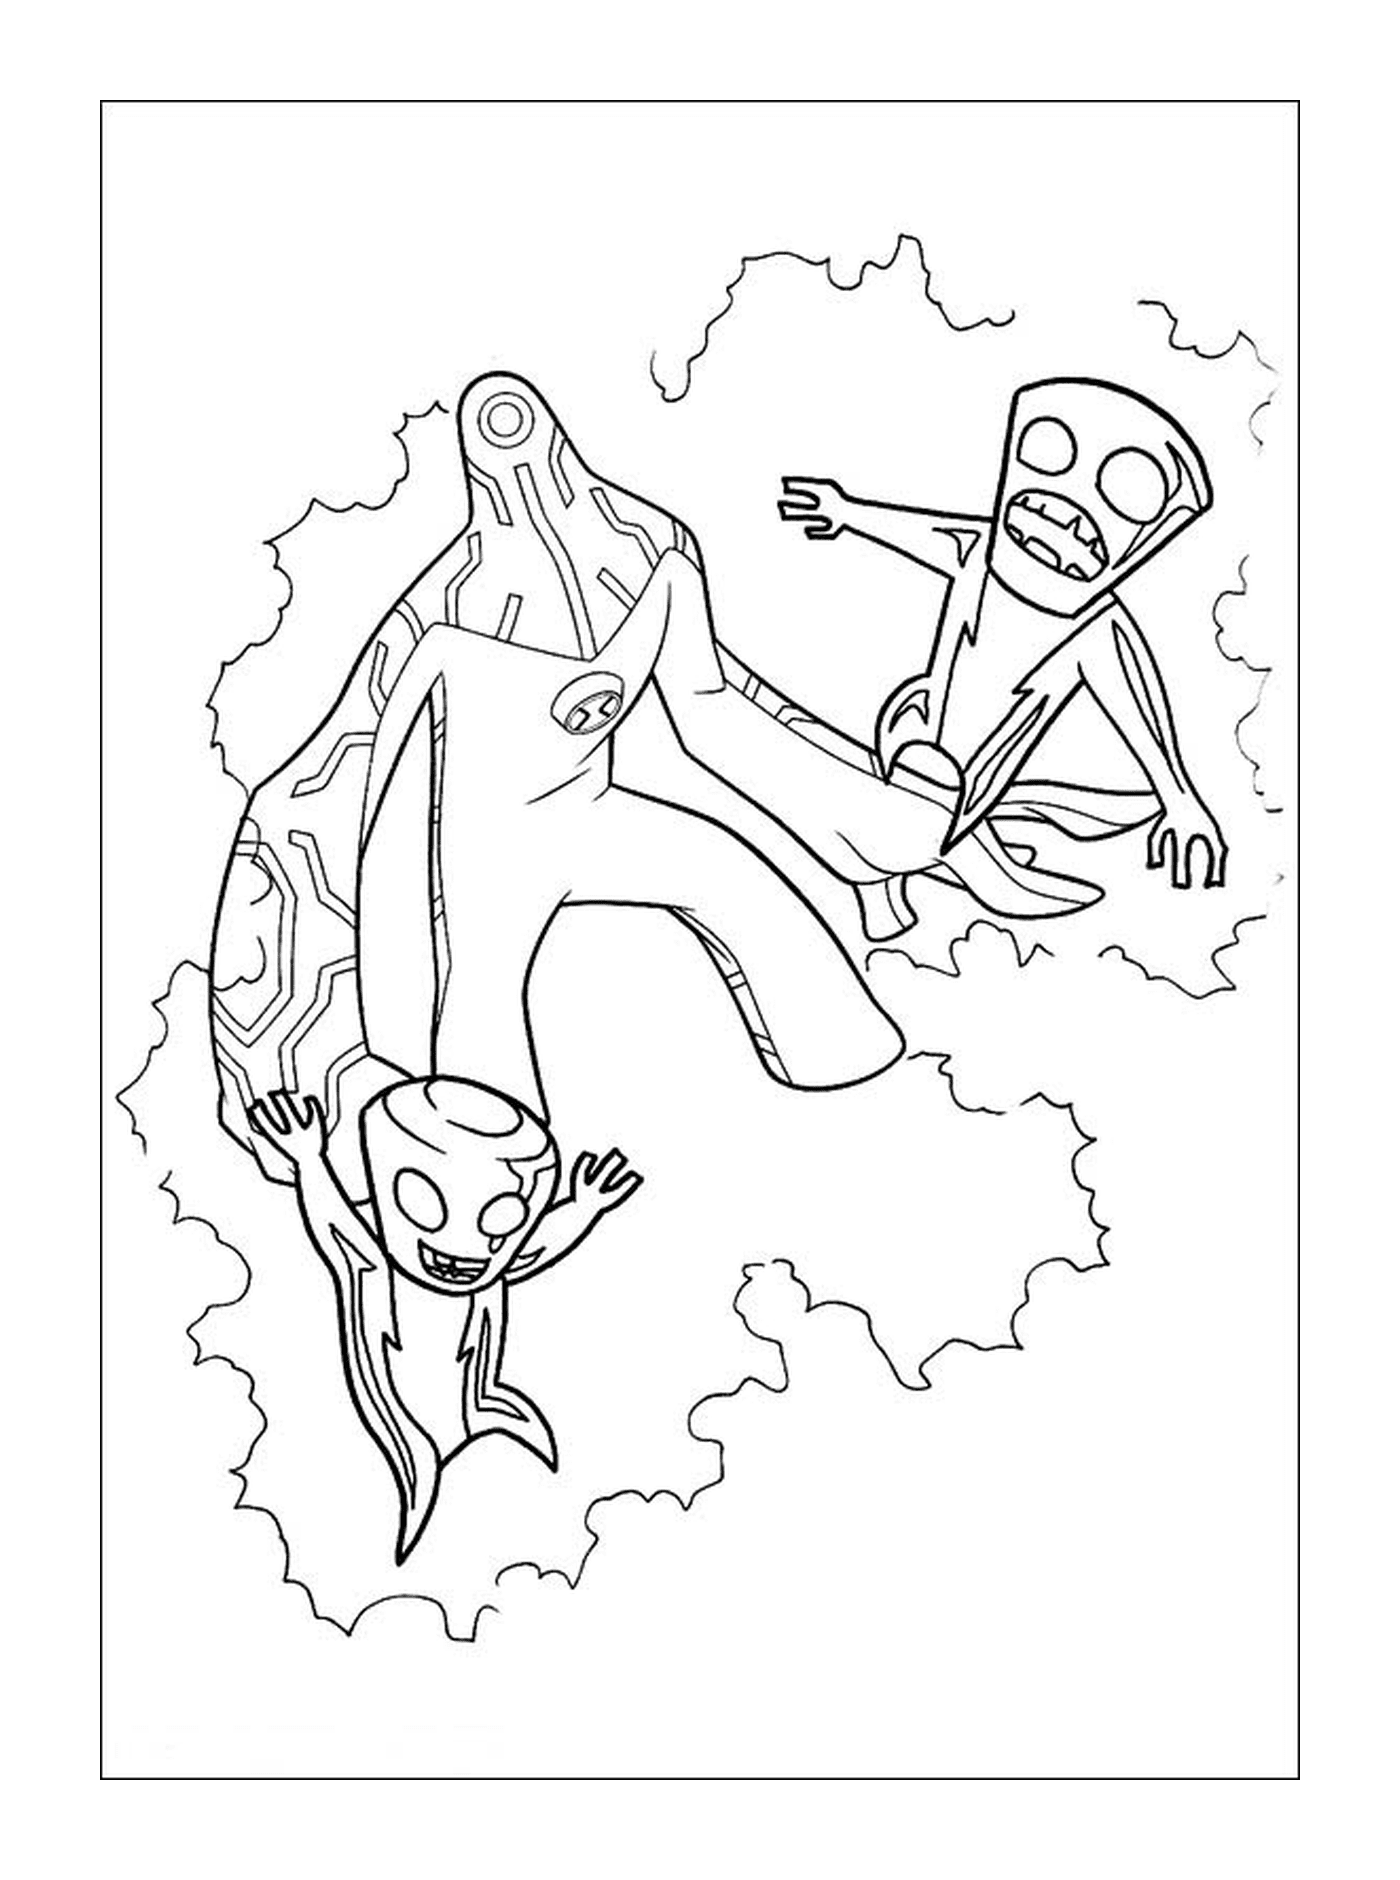  Flying Duo en dibujo 138 